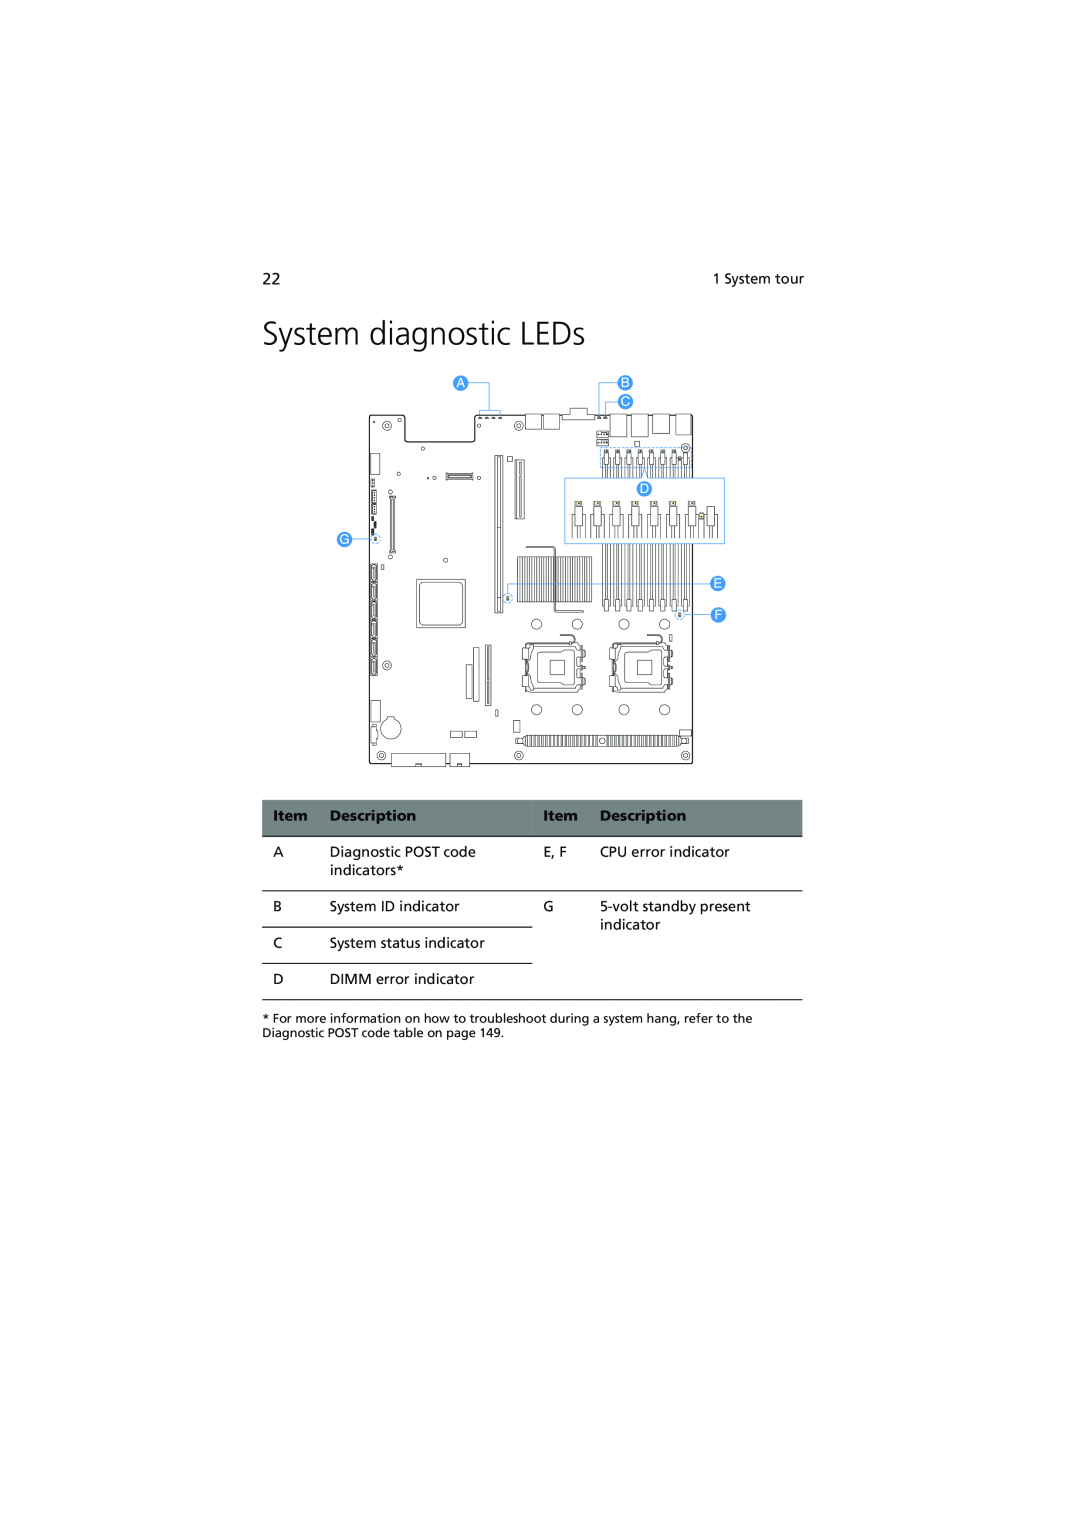 Acer R720 Series manual System diagnostic LEDs, Description 